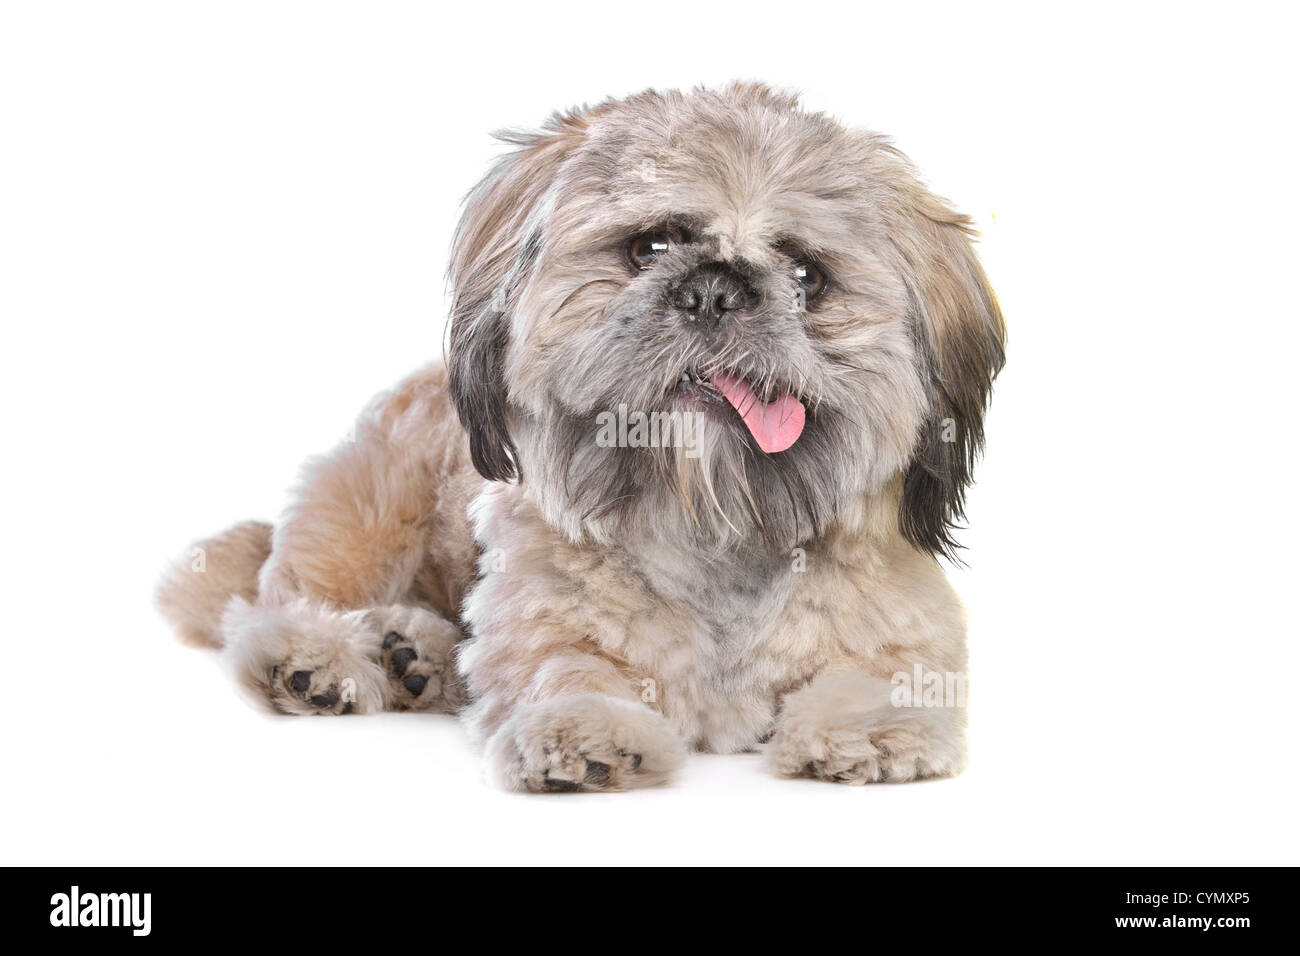 Mischling eines Shih Tzu und Pekingese Hund Stockfotografie - Alamy